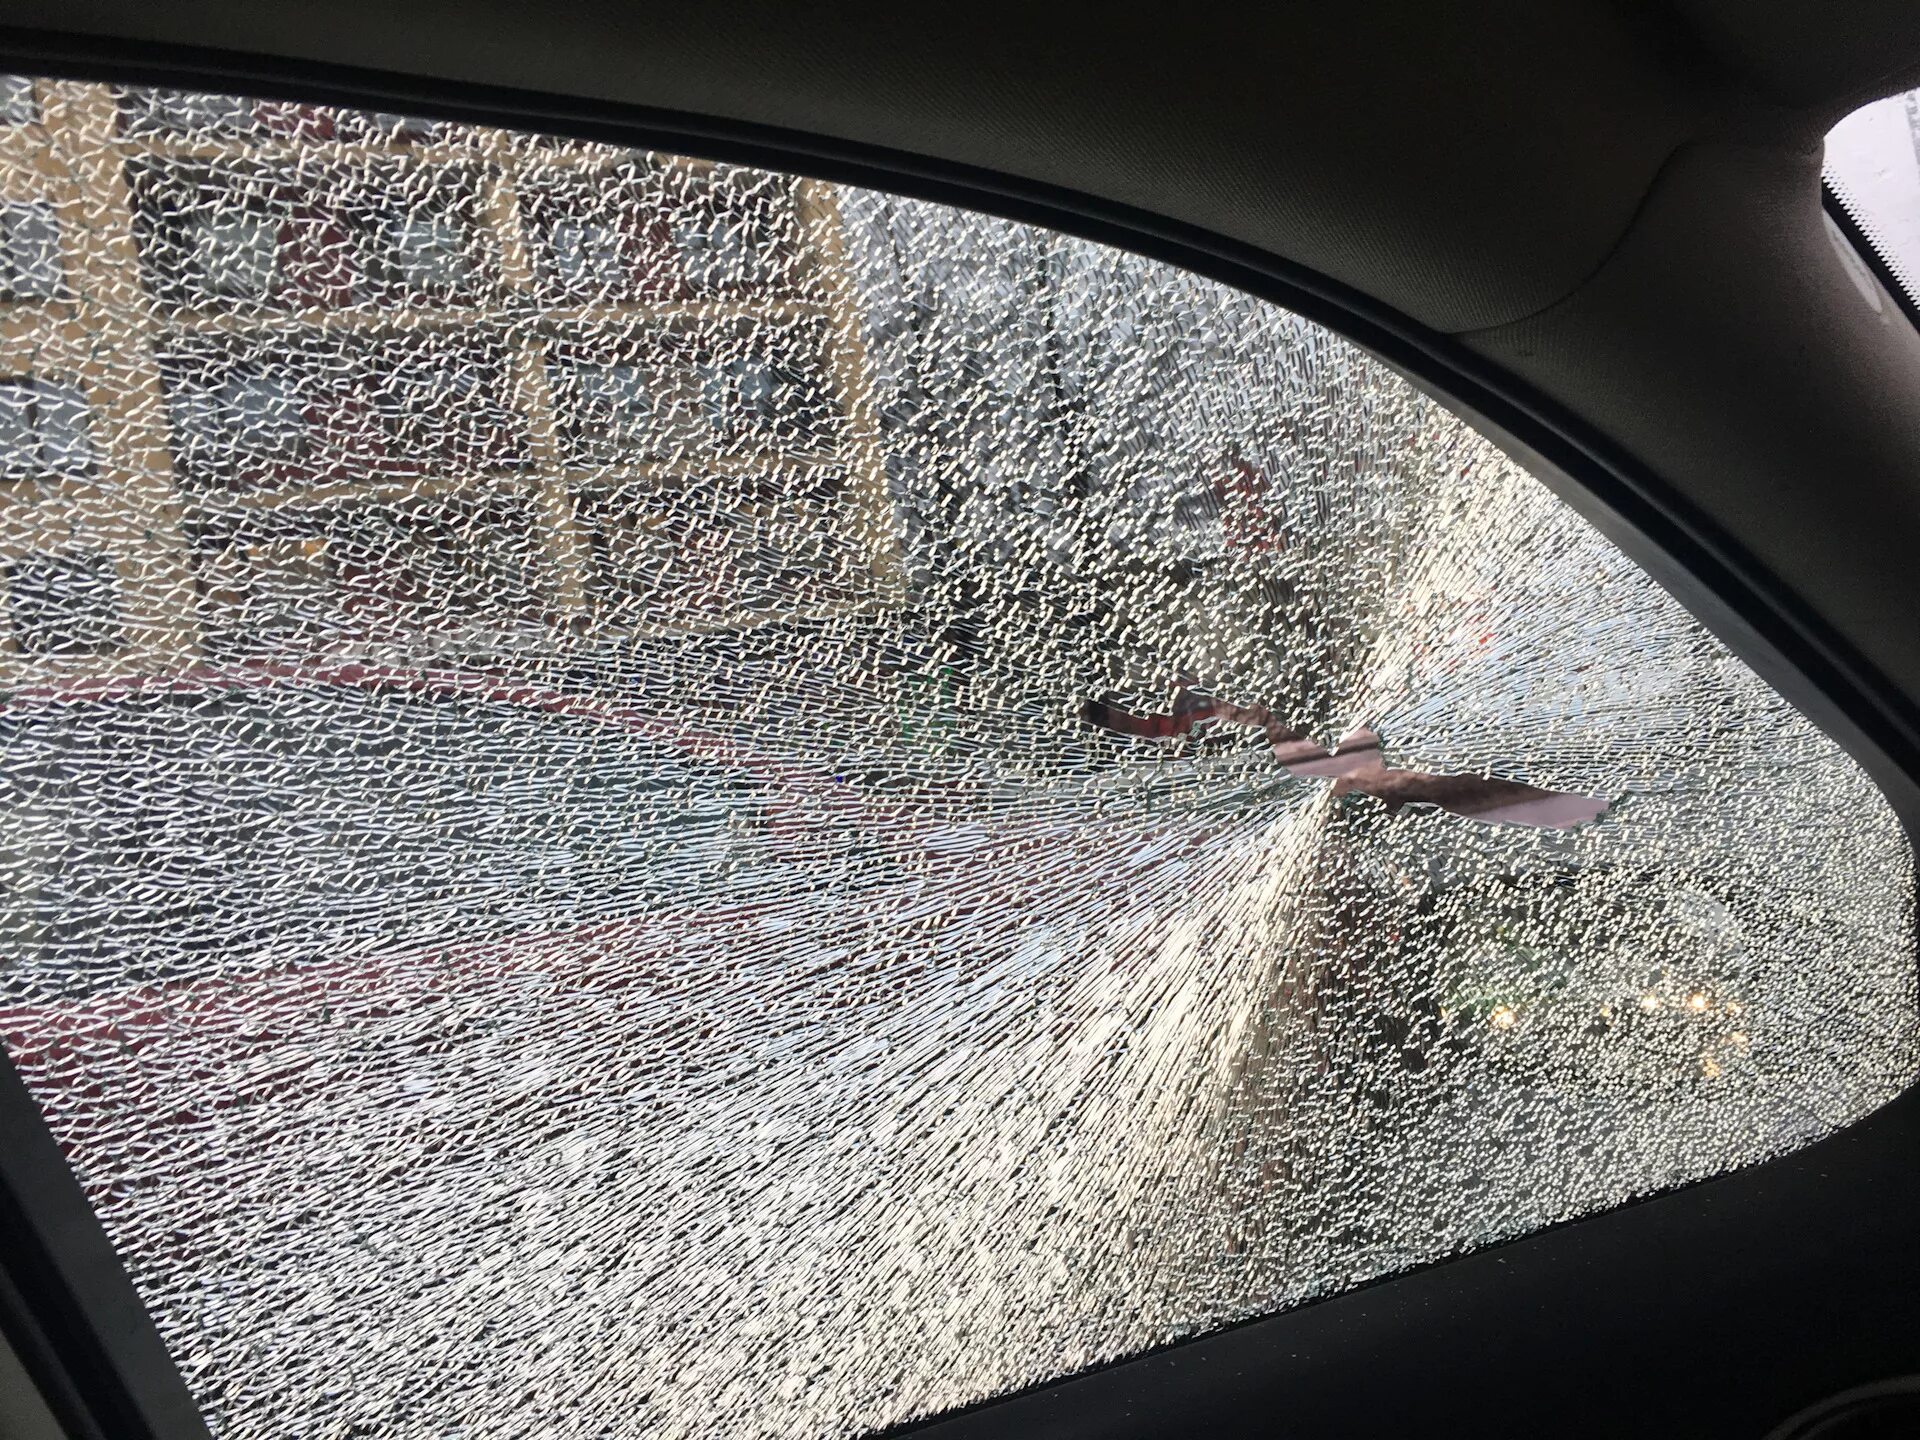 Разбиты окна машин. Разбитое стекло автомобиля. Разбитые стекла в машине. Автомобильное стекло. Камень в стекло автомобиля.